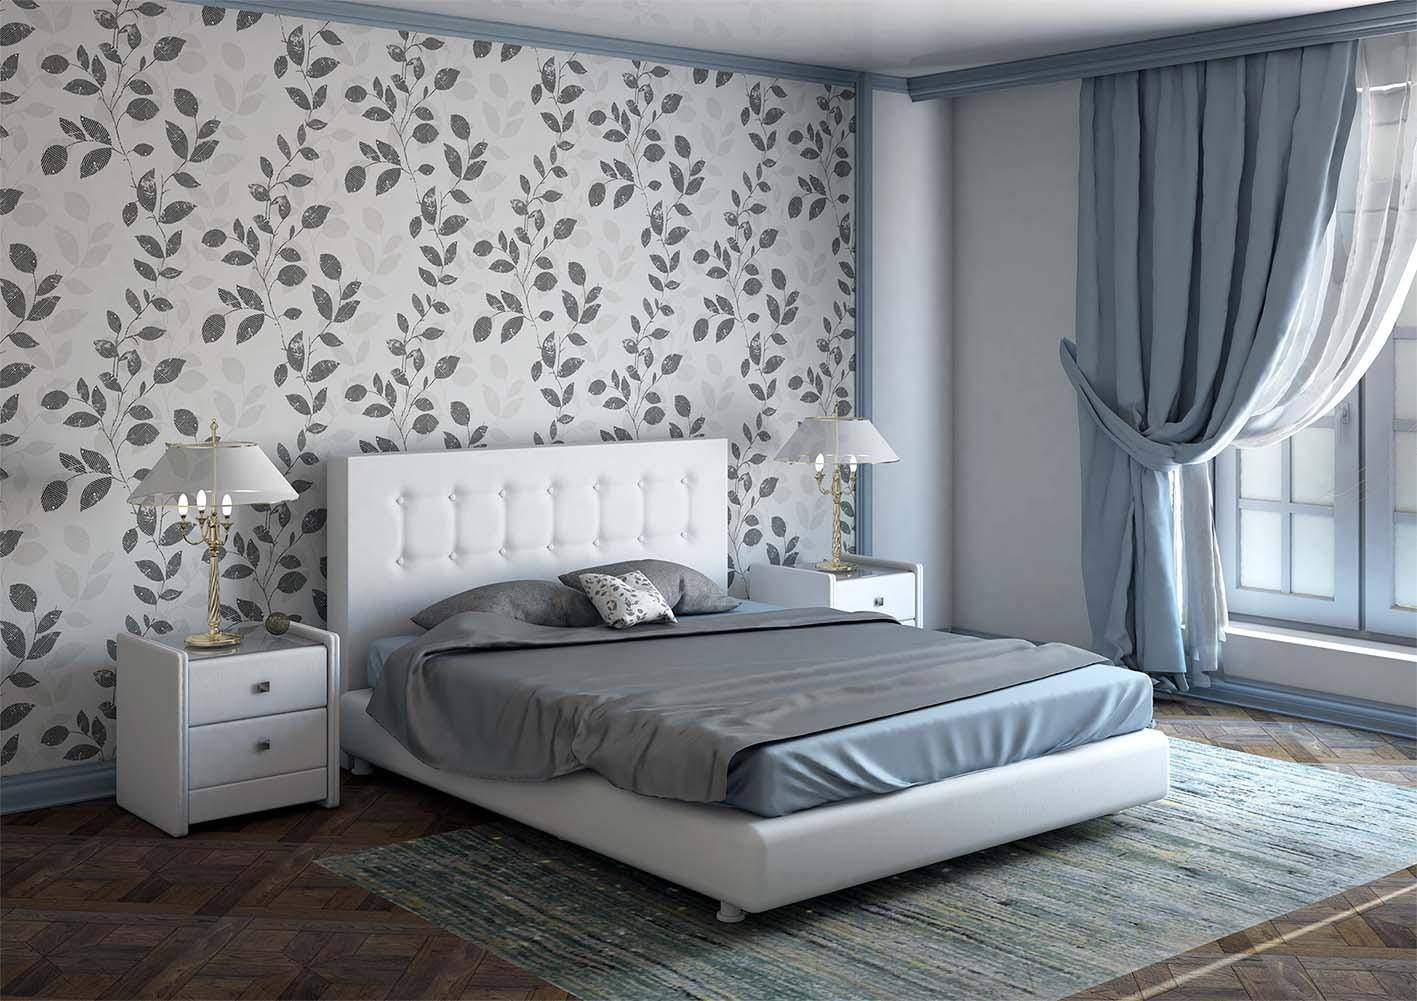 Обои для спальни 2021 года — модные тренды дизайна и оформления, новинки, выбор цвета, комбинированные обои, советы, правила